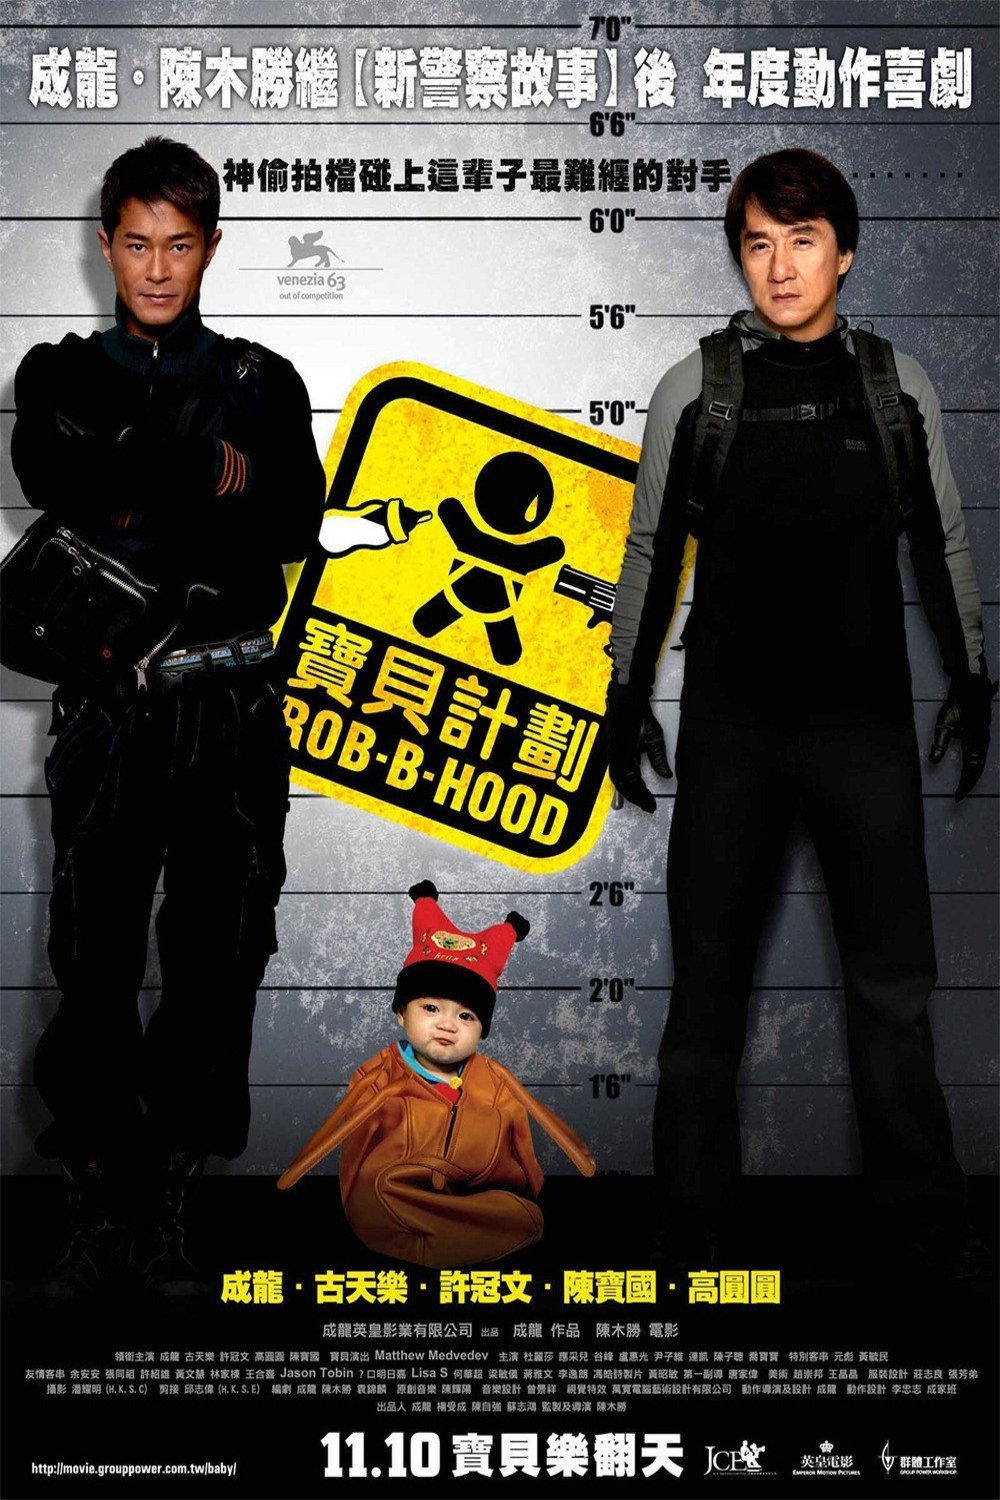 L'affiche originale du film Bo bui gai wak en Cantonais